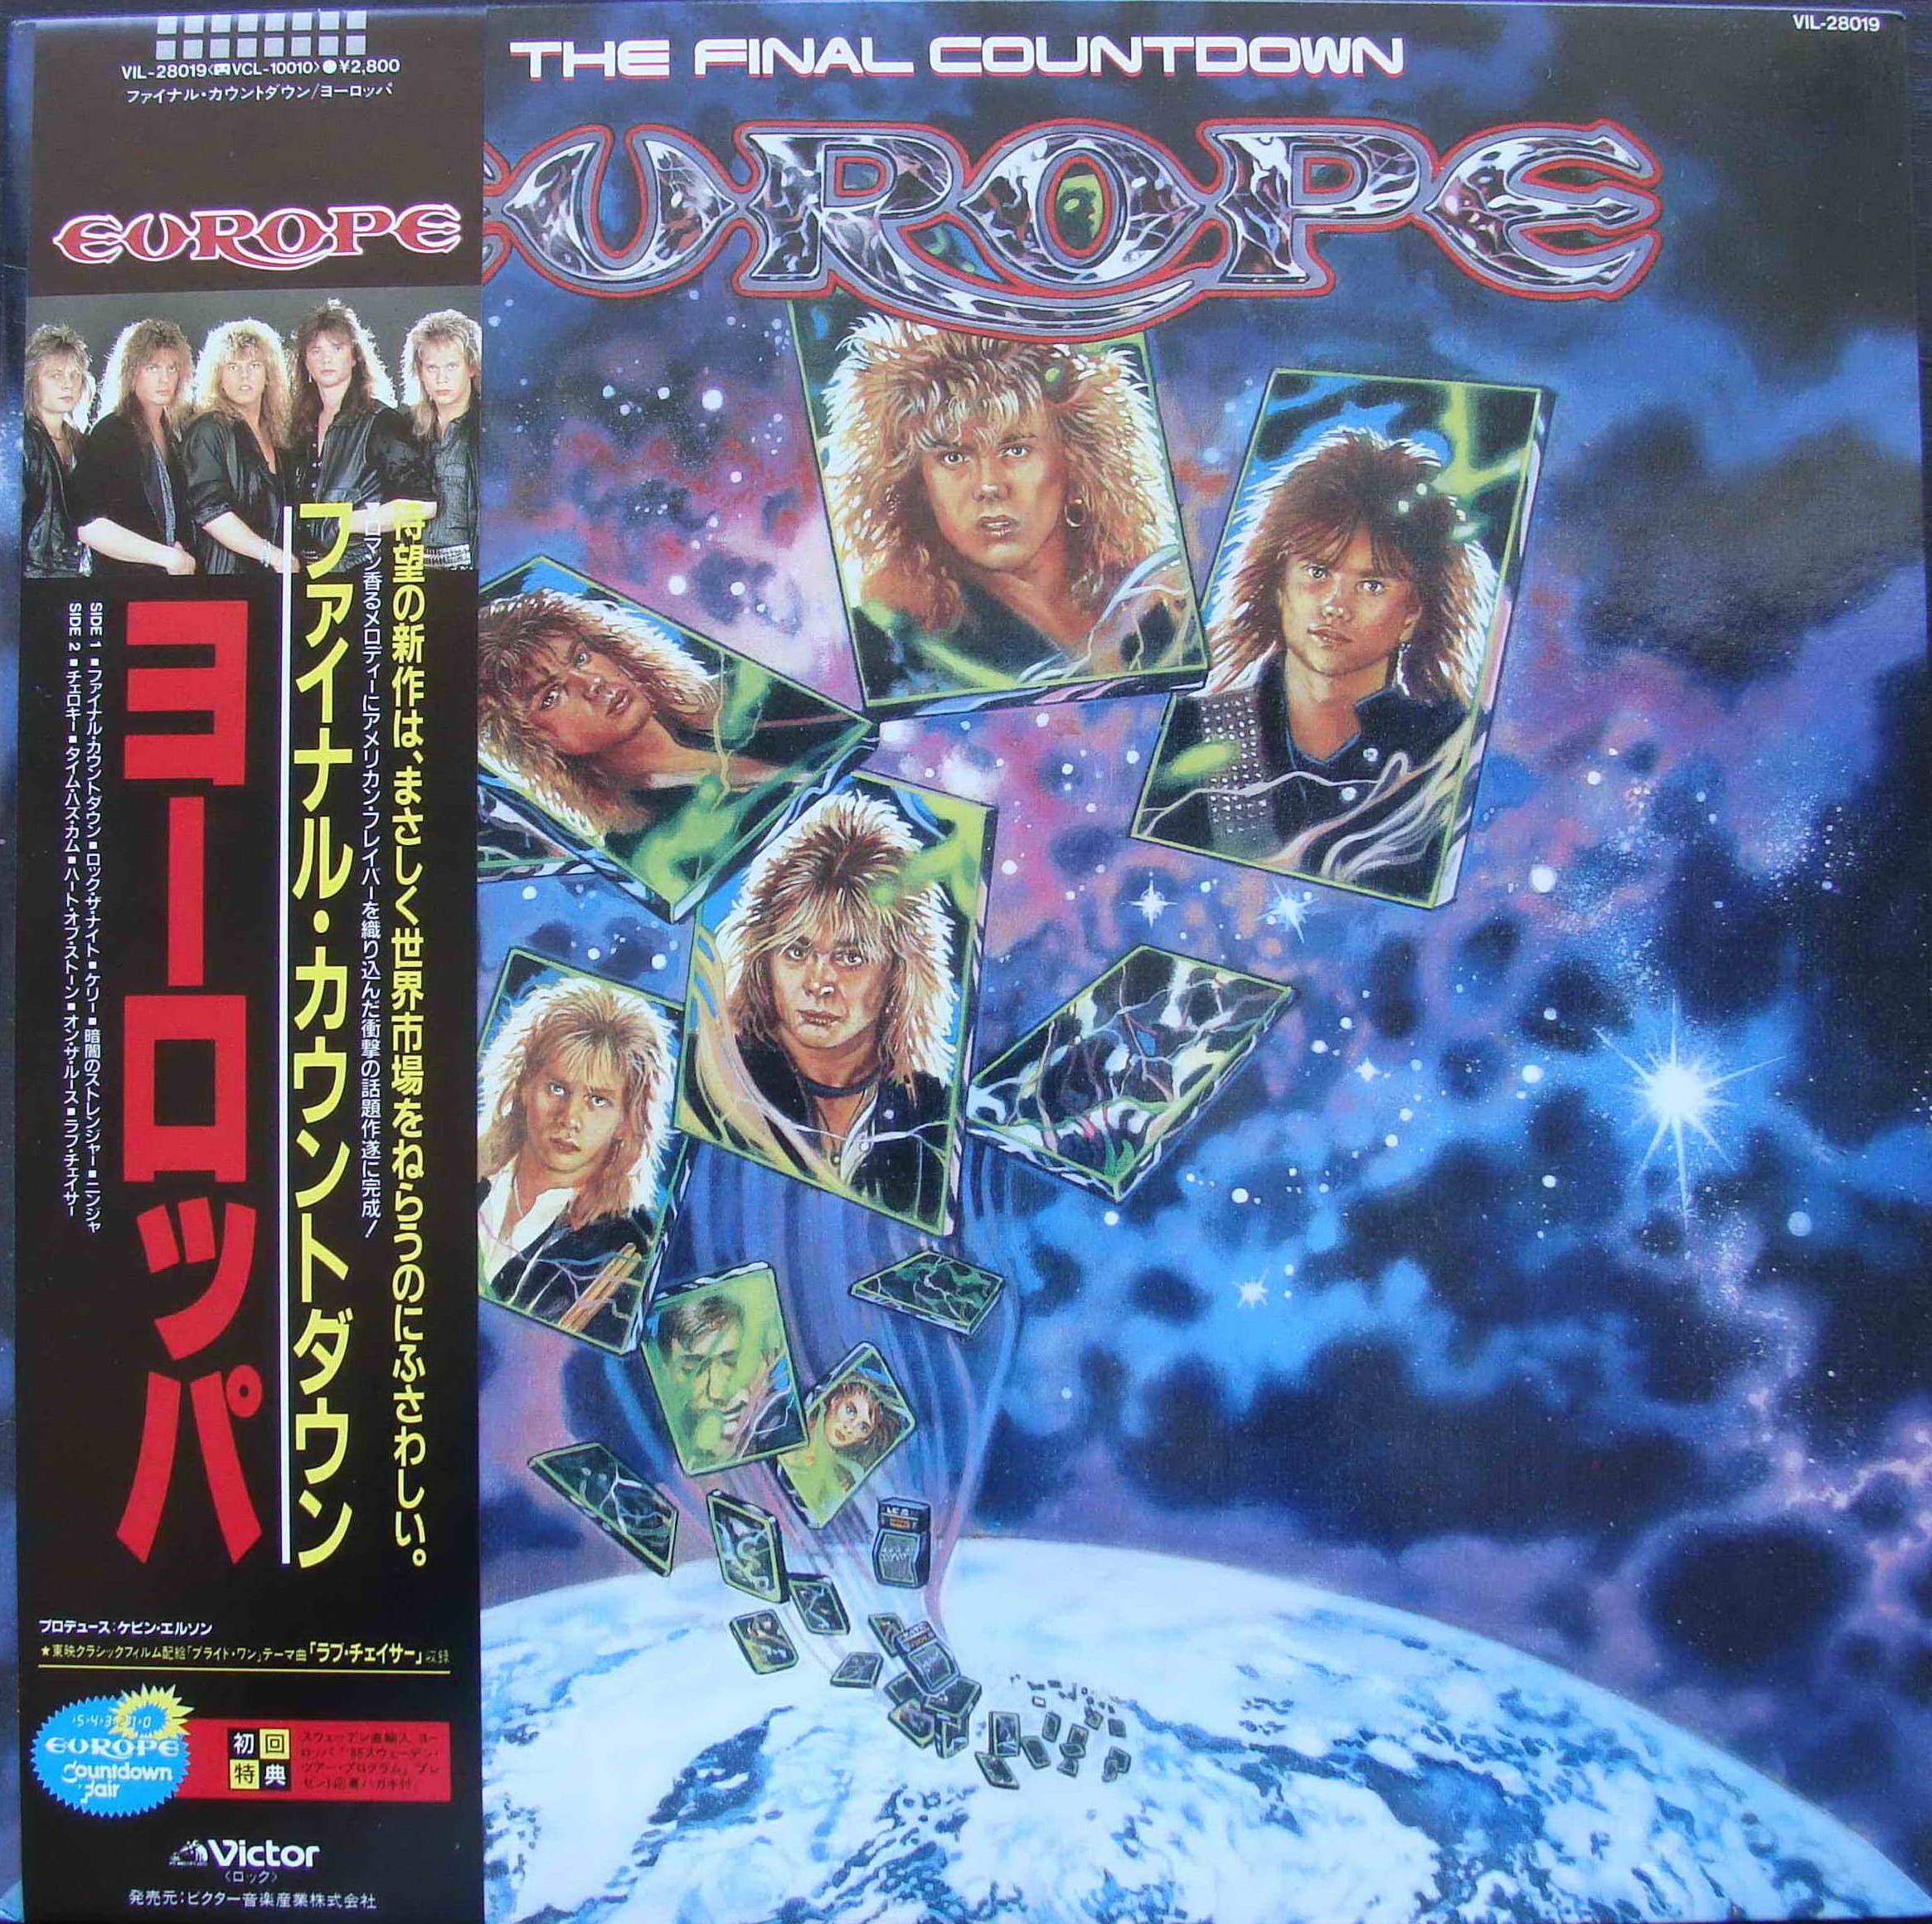 Европа файнал каунтдаун. Europe Final Countdown 1986 LP. Europe the Final Countdown 1986 альбом. Europe the Final Countdown обложка. Europe - the Final Countdown- фотоальбом.